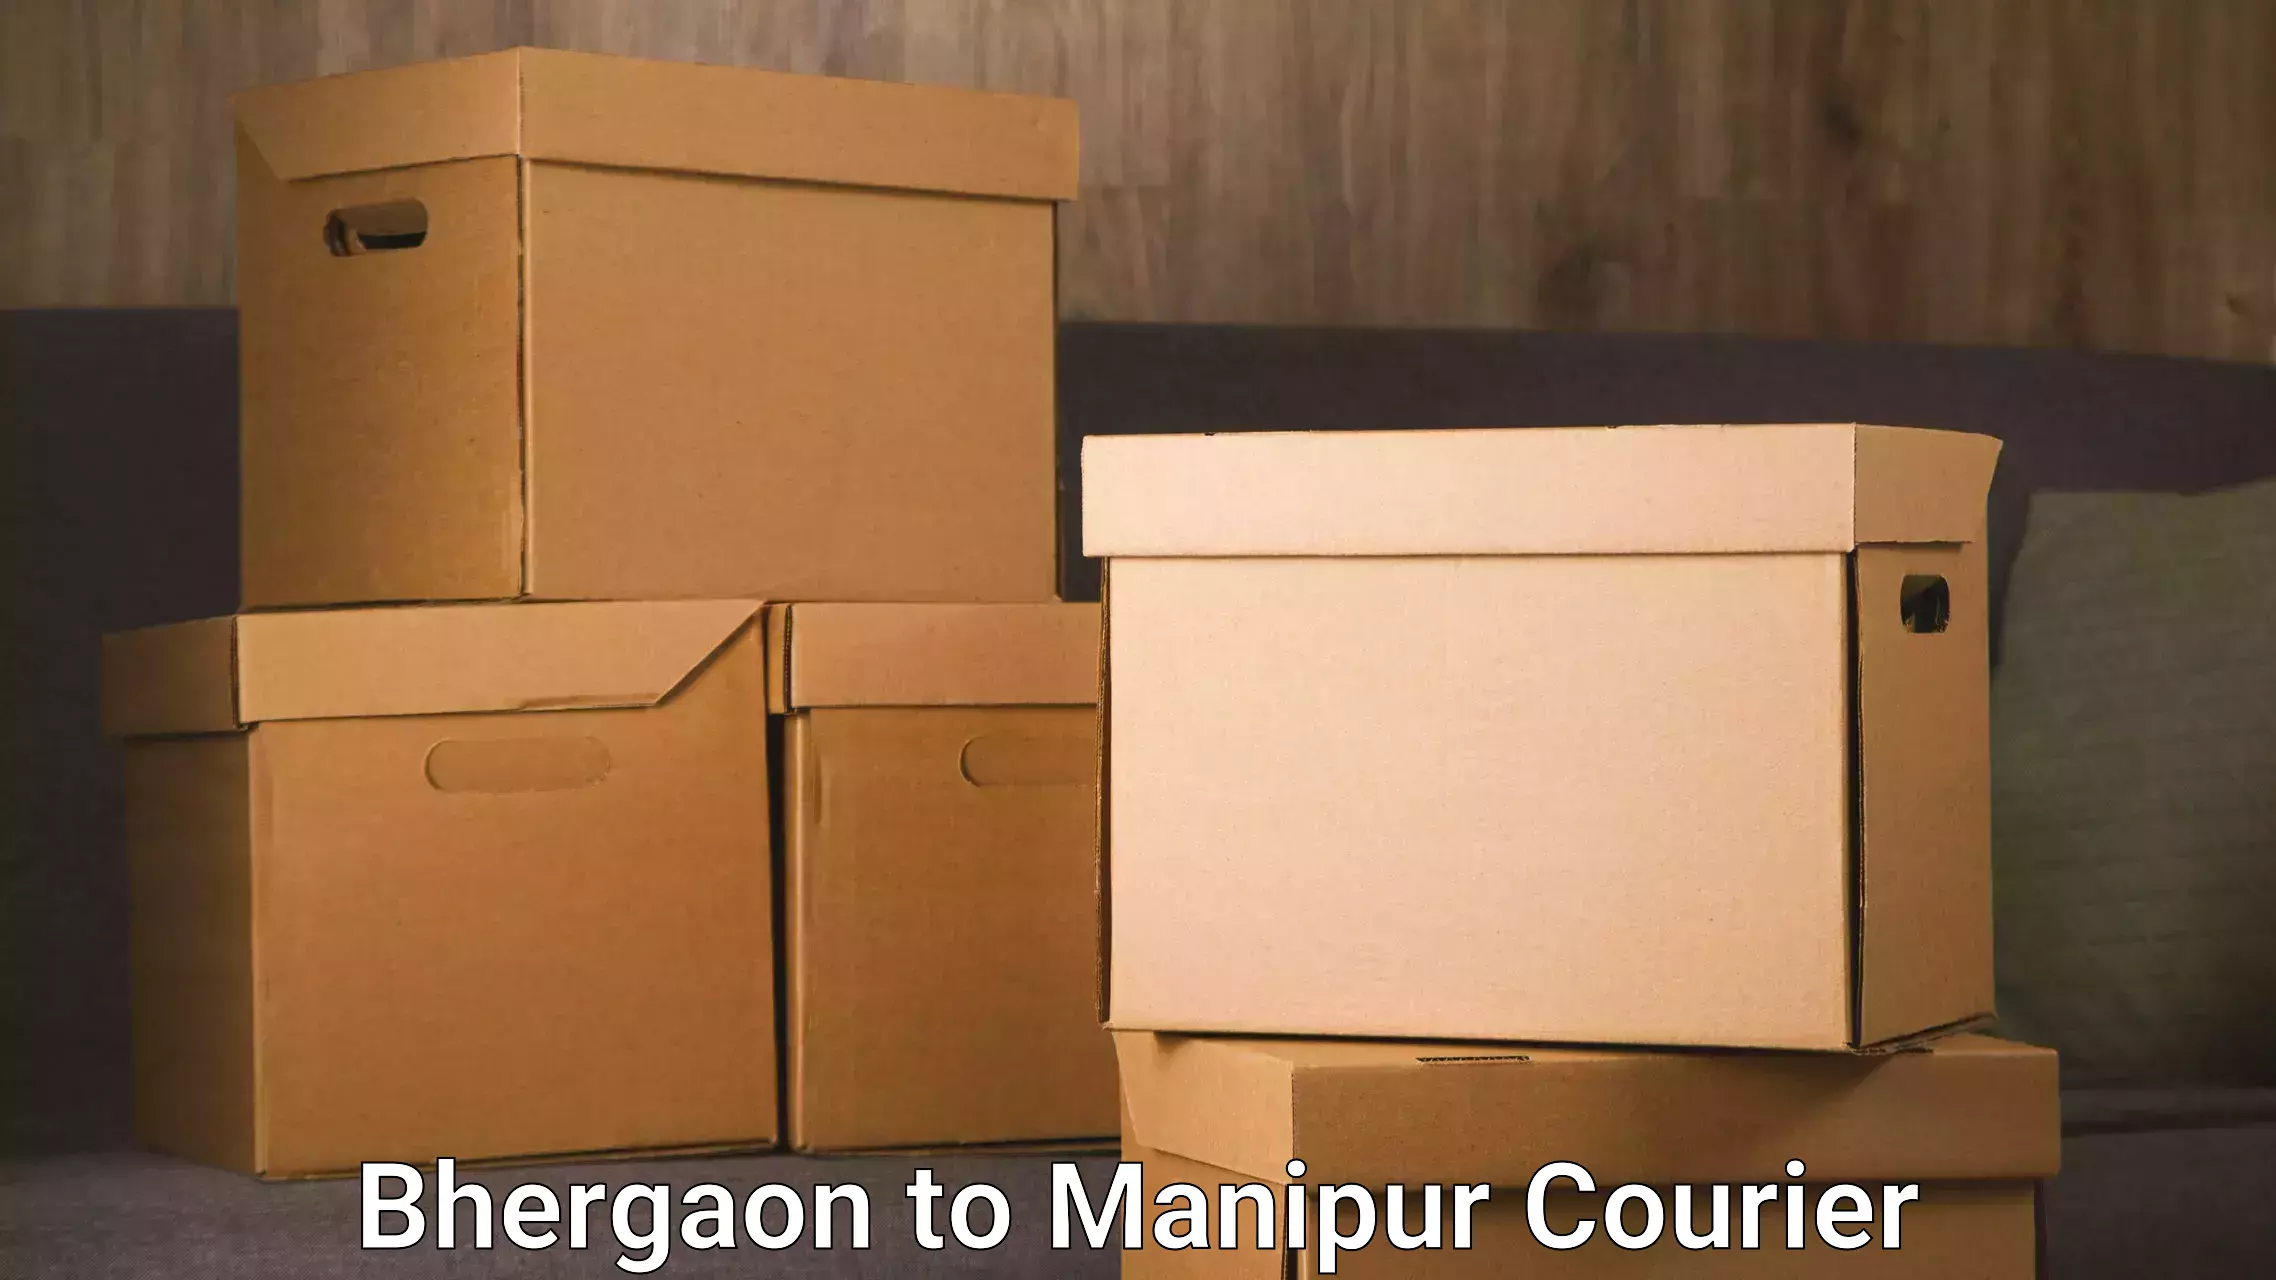 Fast delivery service Bhergaon to Senapati